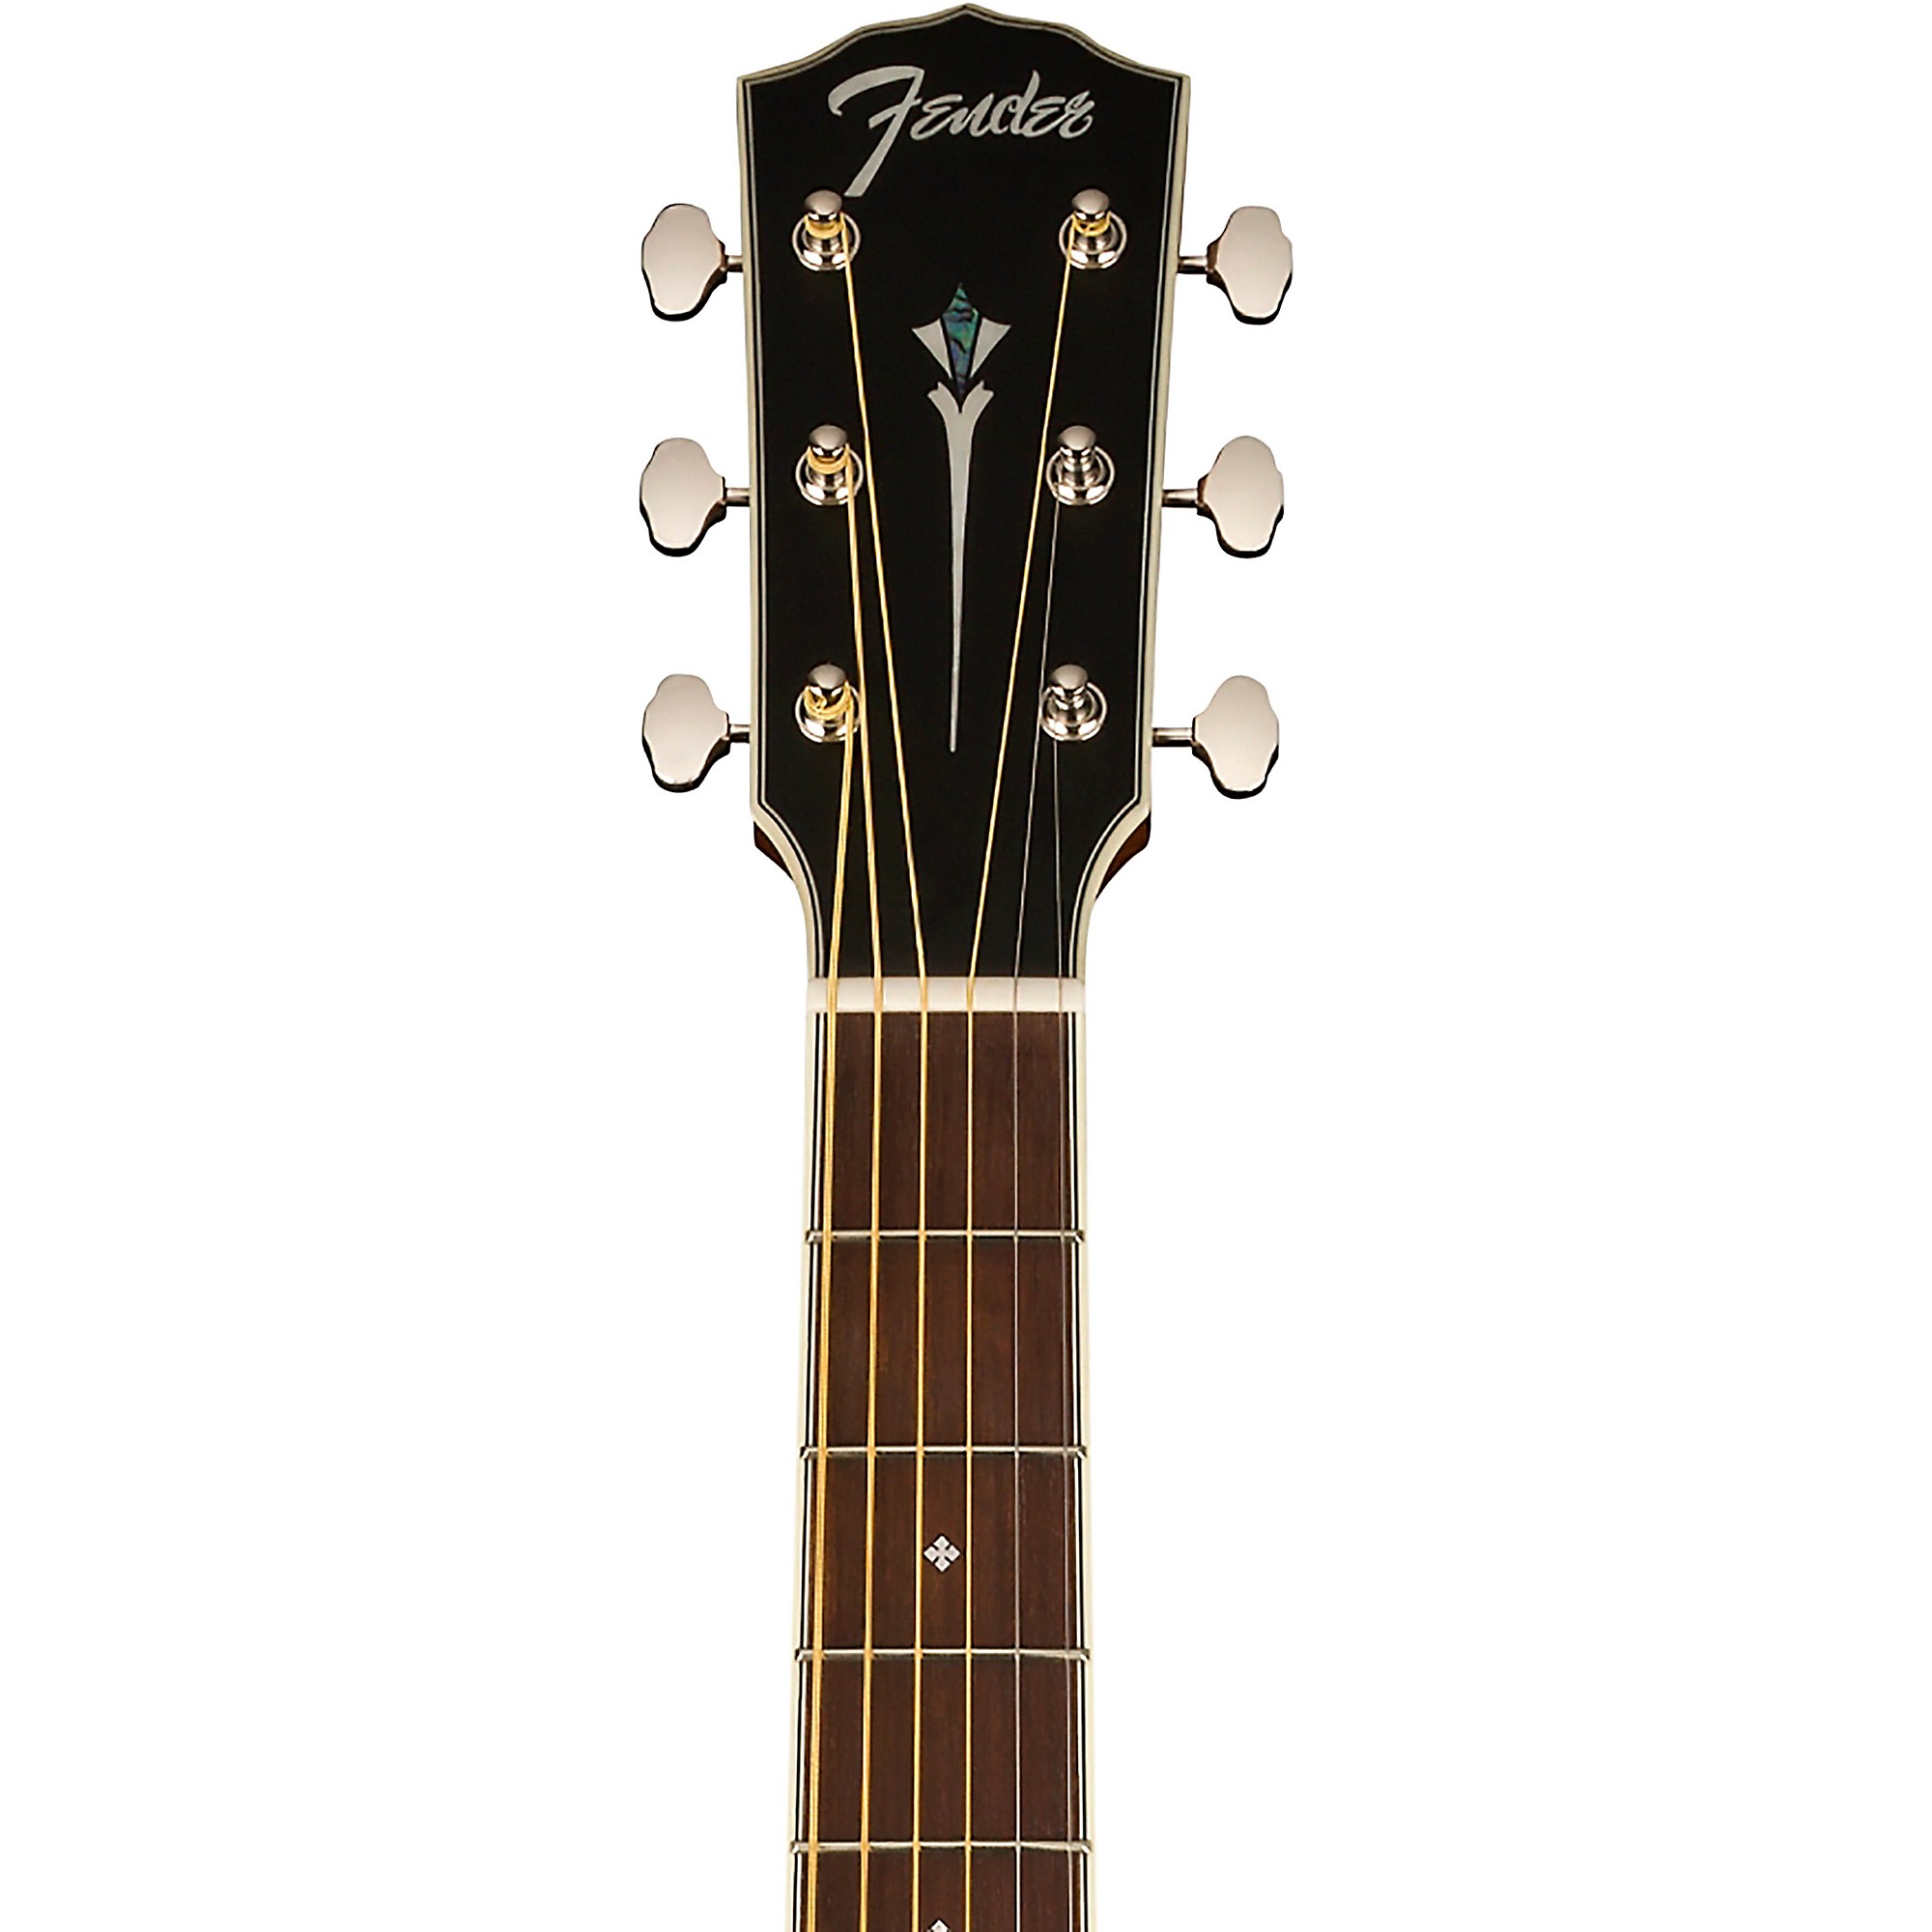 Акустически-электрическая гитара Fender Paramount PS-220E Parlor Aged Cognac Burst